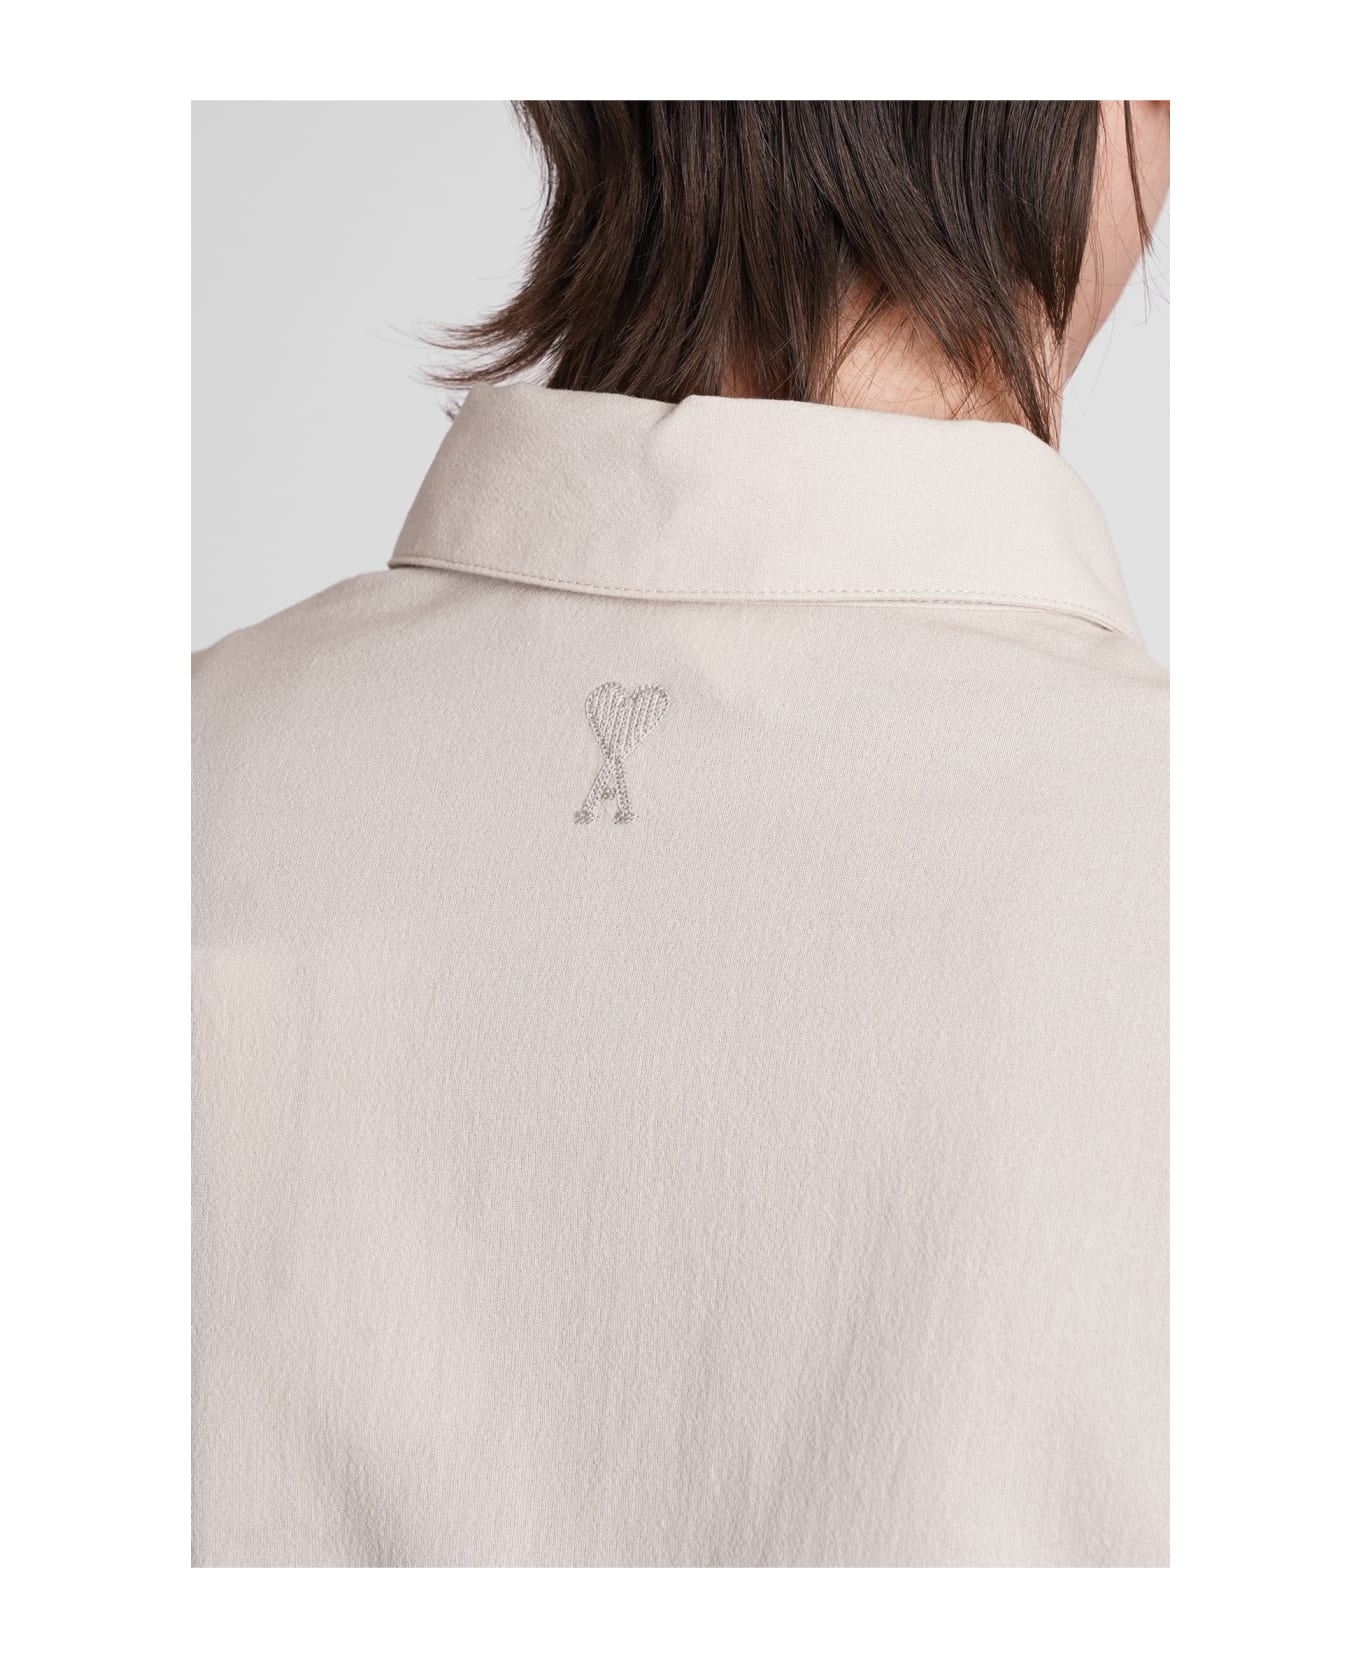 Ami Alexandre Mattiussi Shirt In Beige Cotton - beige